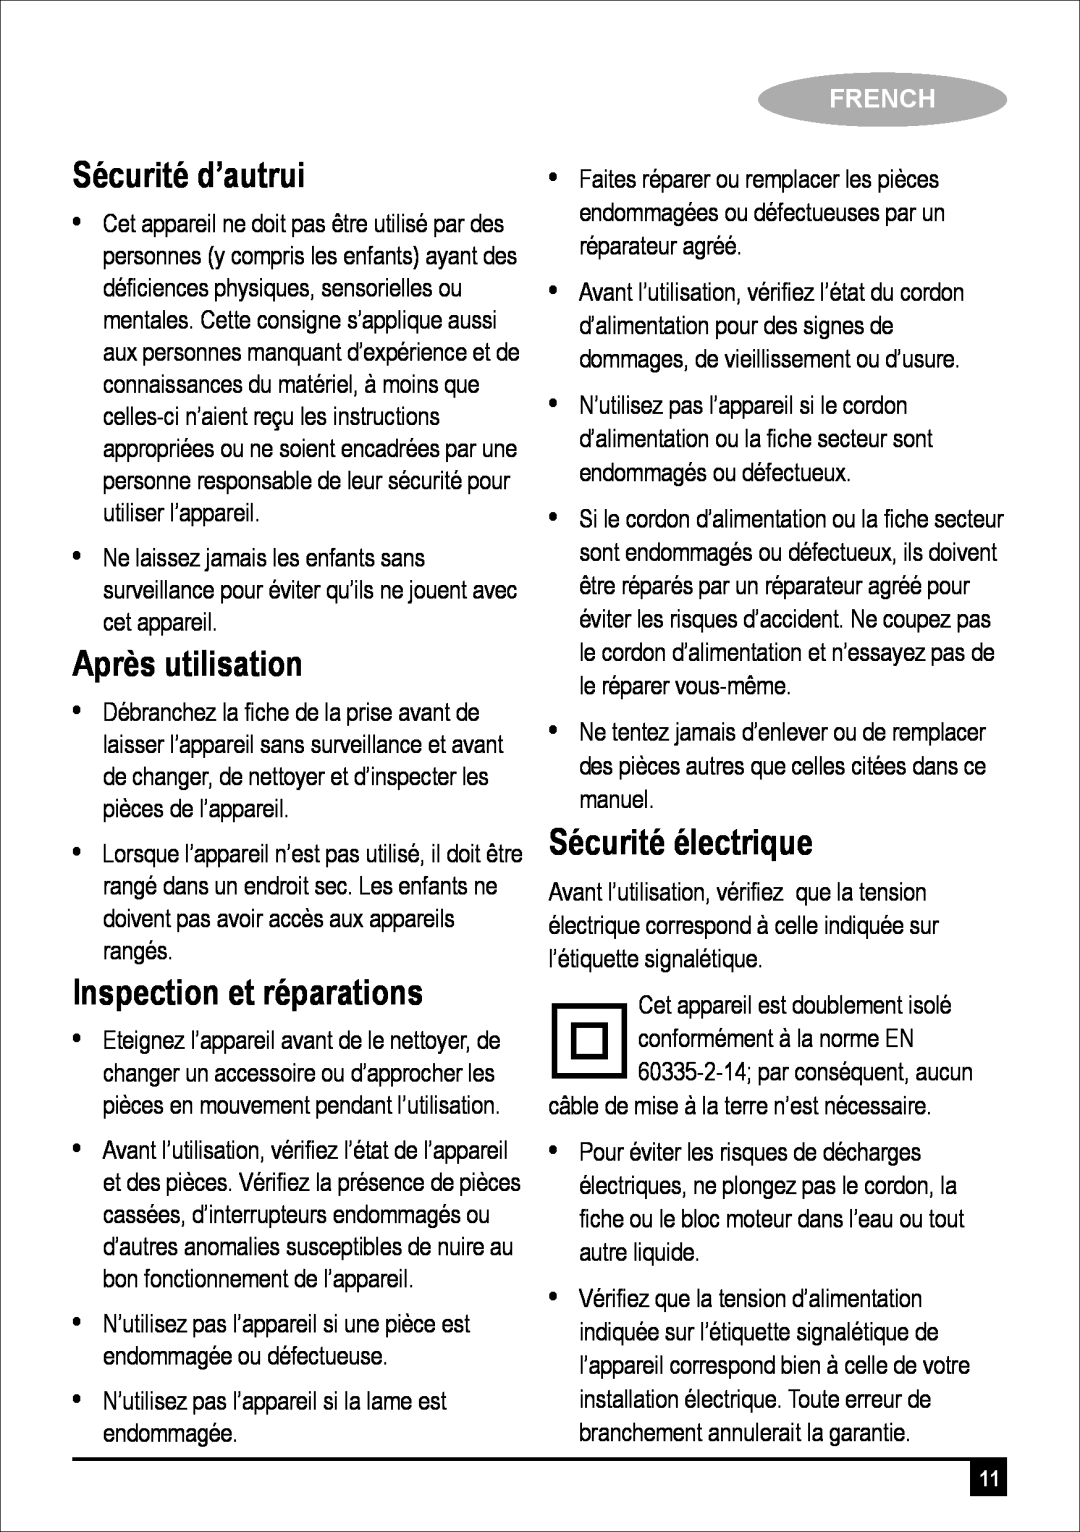 Black & Decker FC300 manual Sécurité d’autrui, Après utilisation, Inspection et réparations, Sécurité électrique, French 